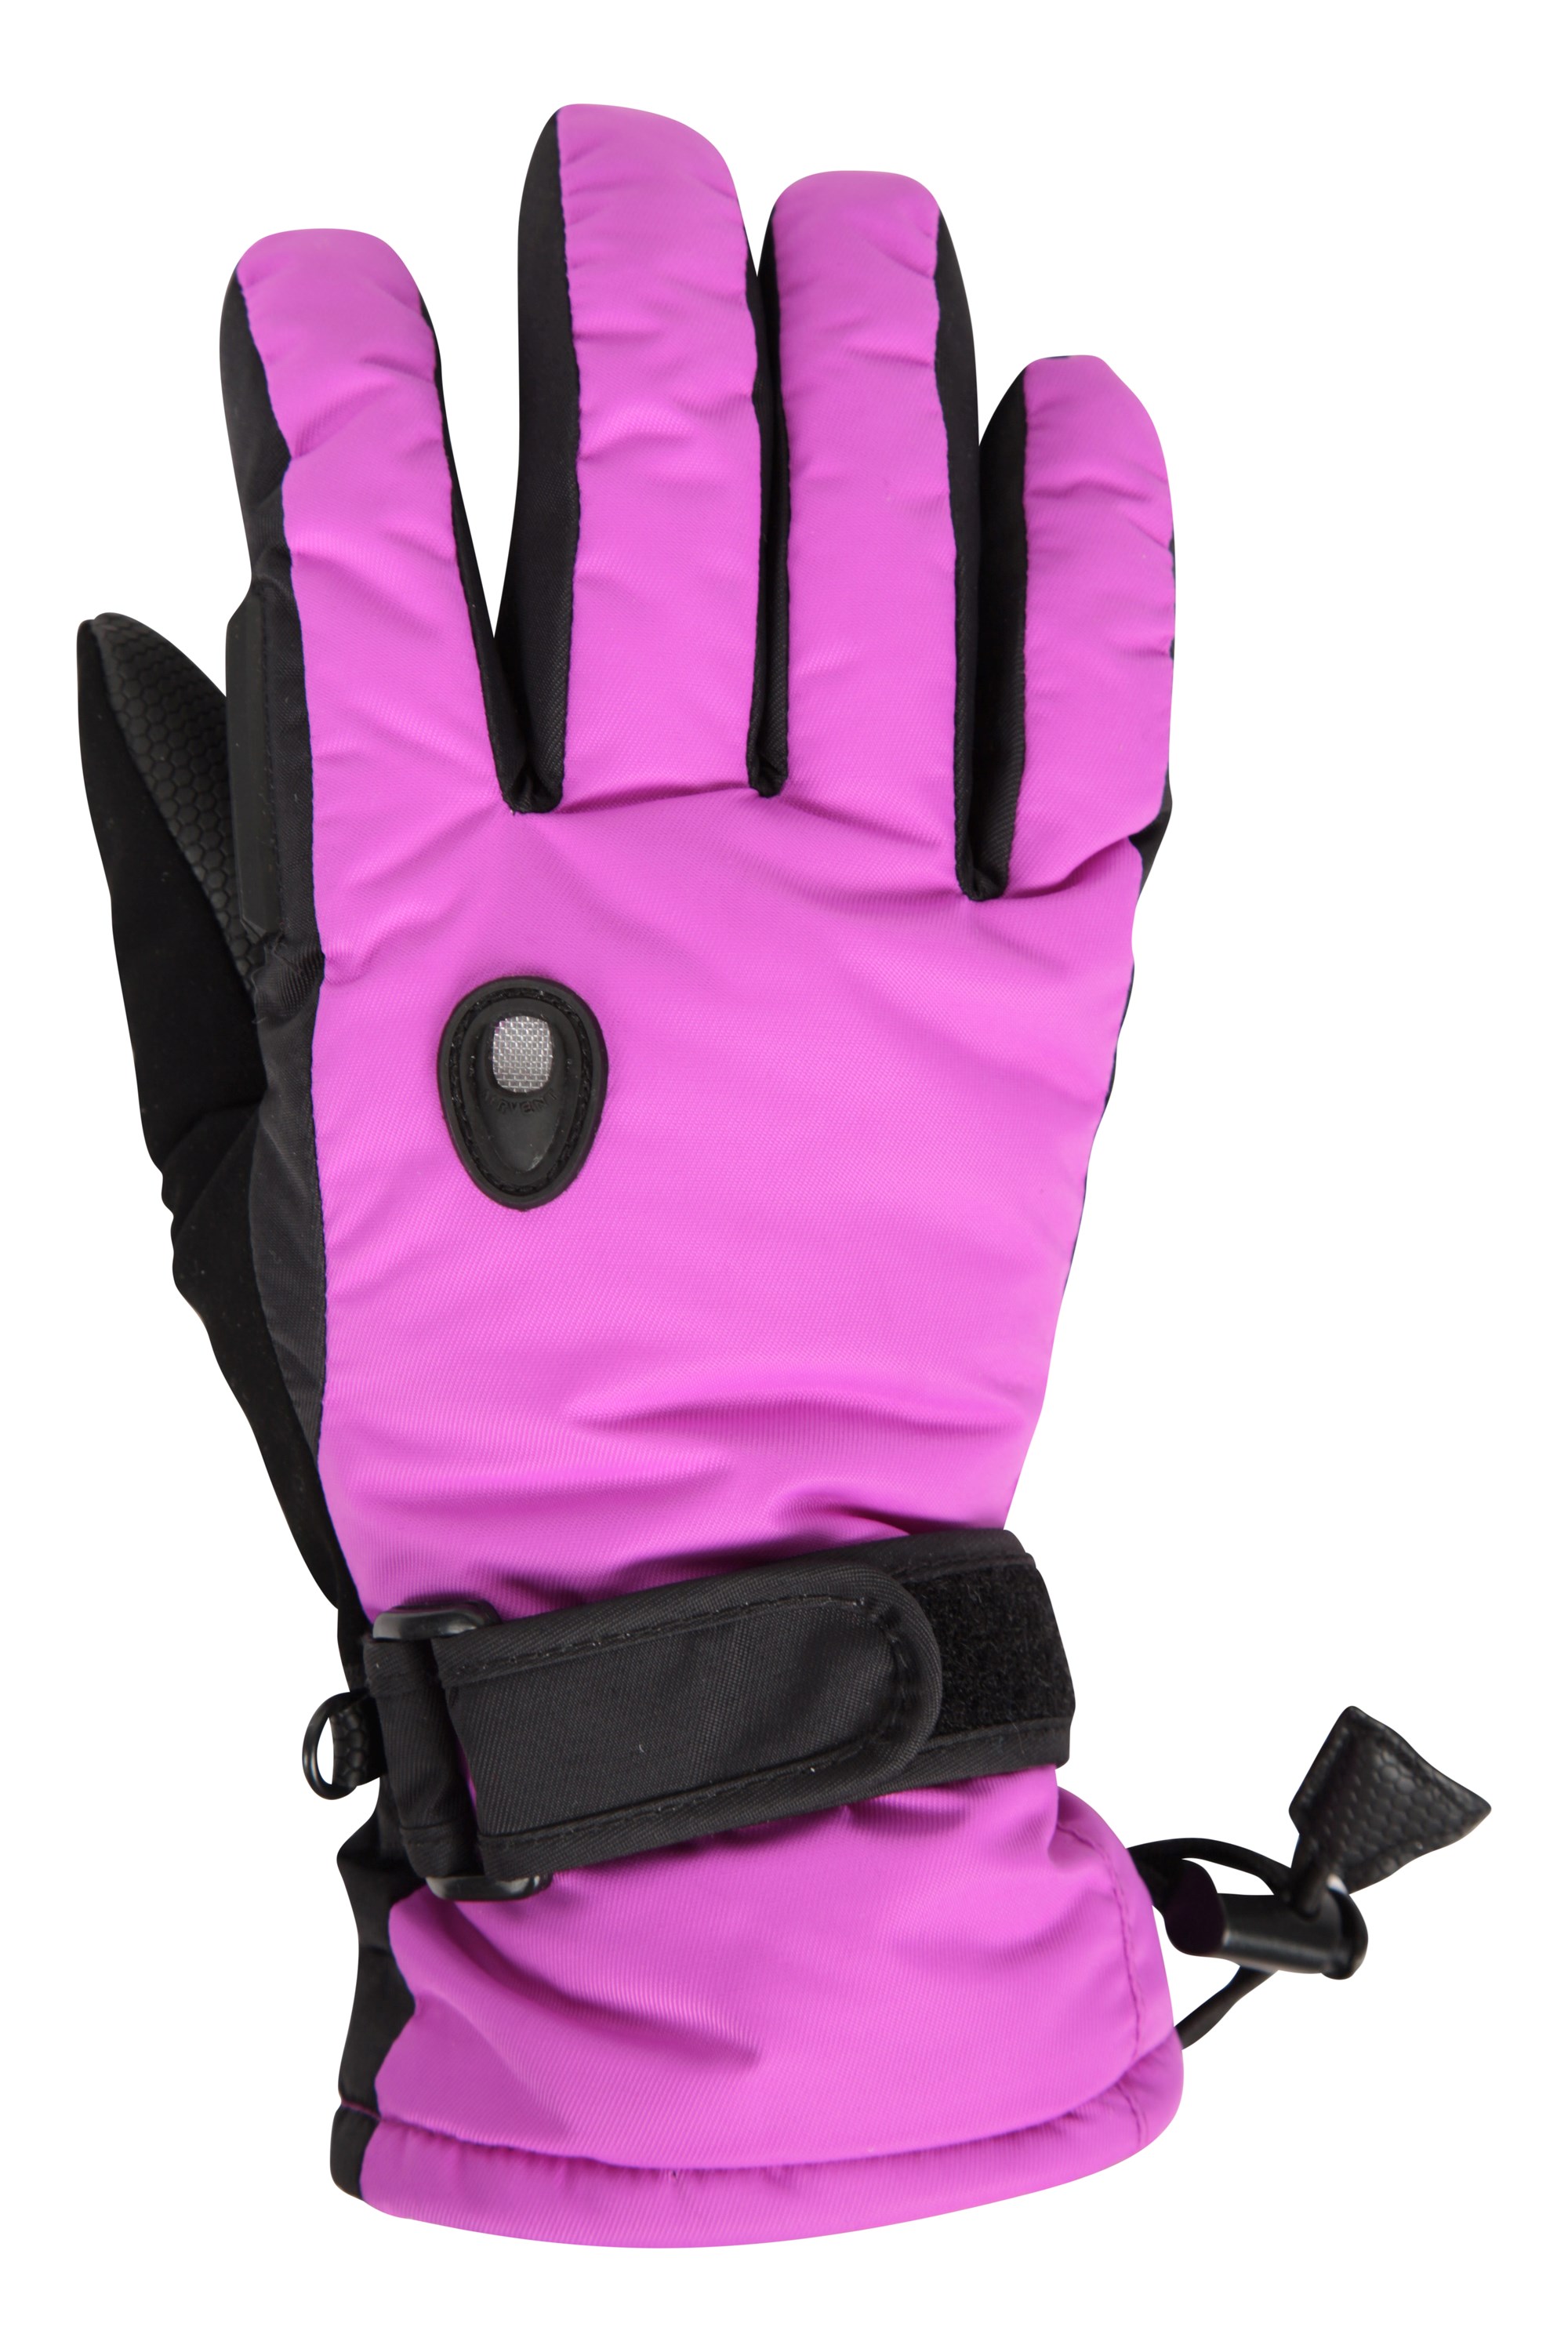 Mountain Warehouse Artic Air Womens Ski Gloves 